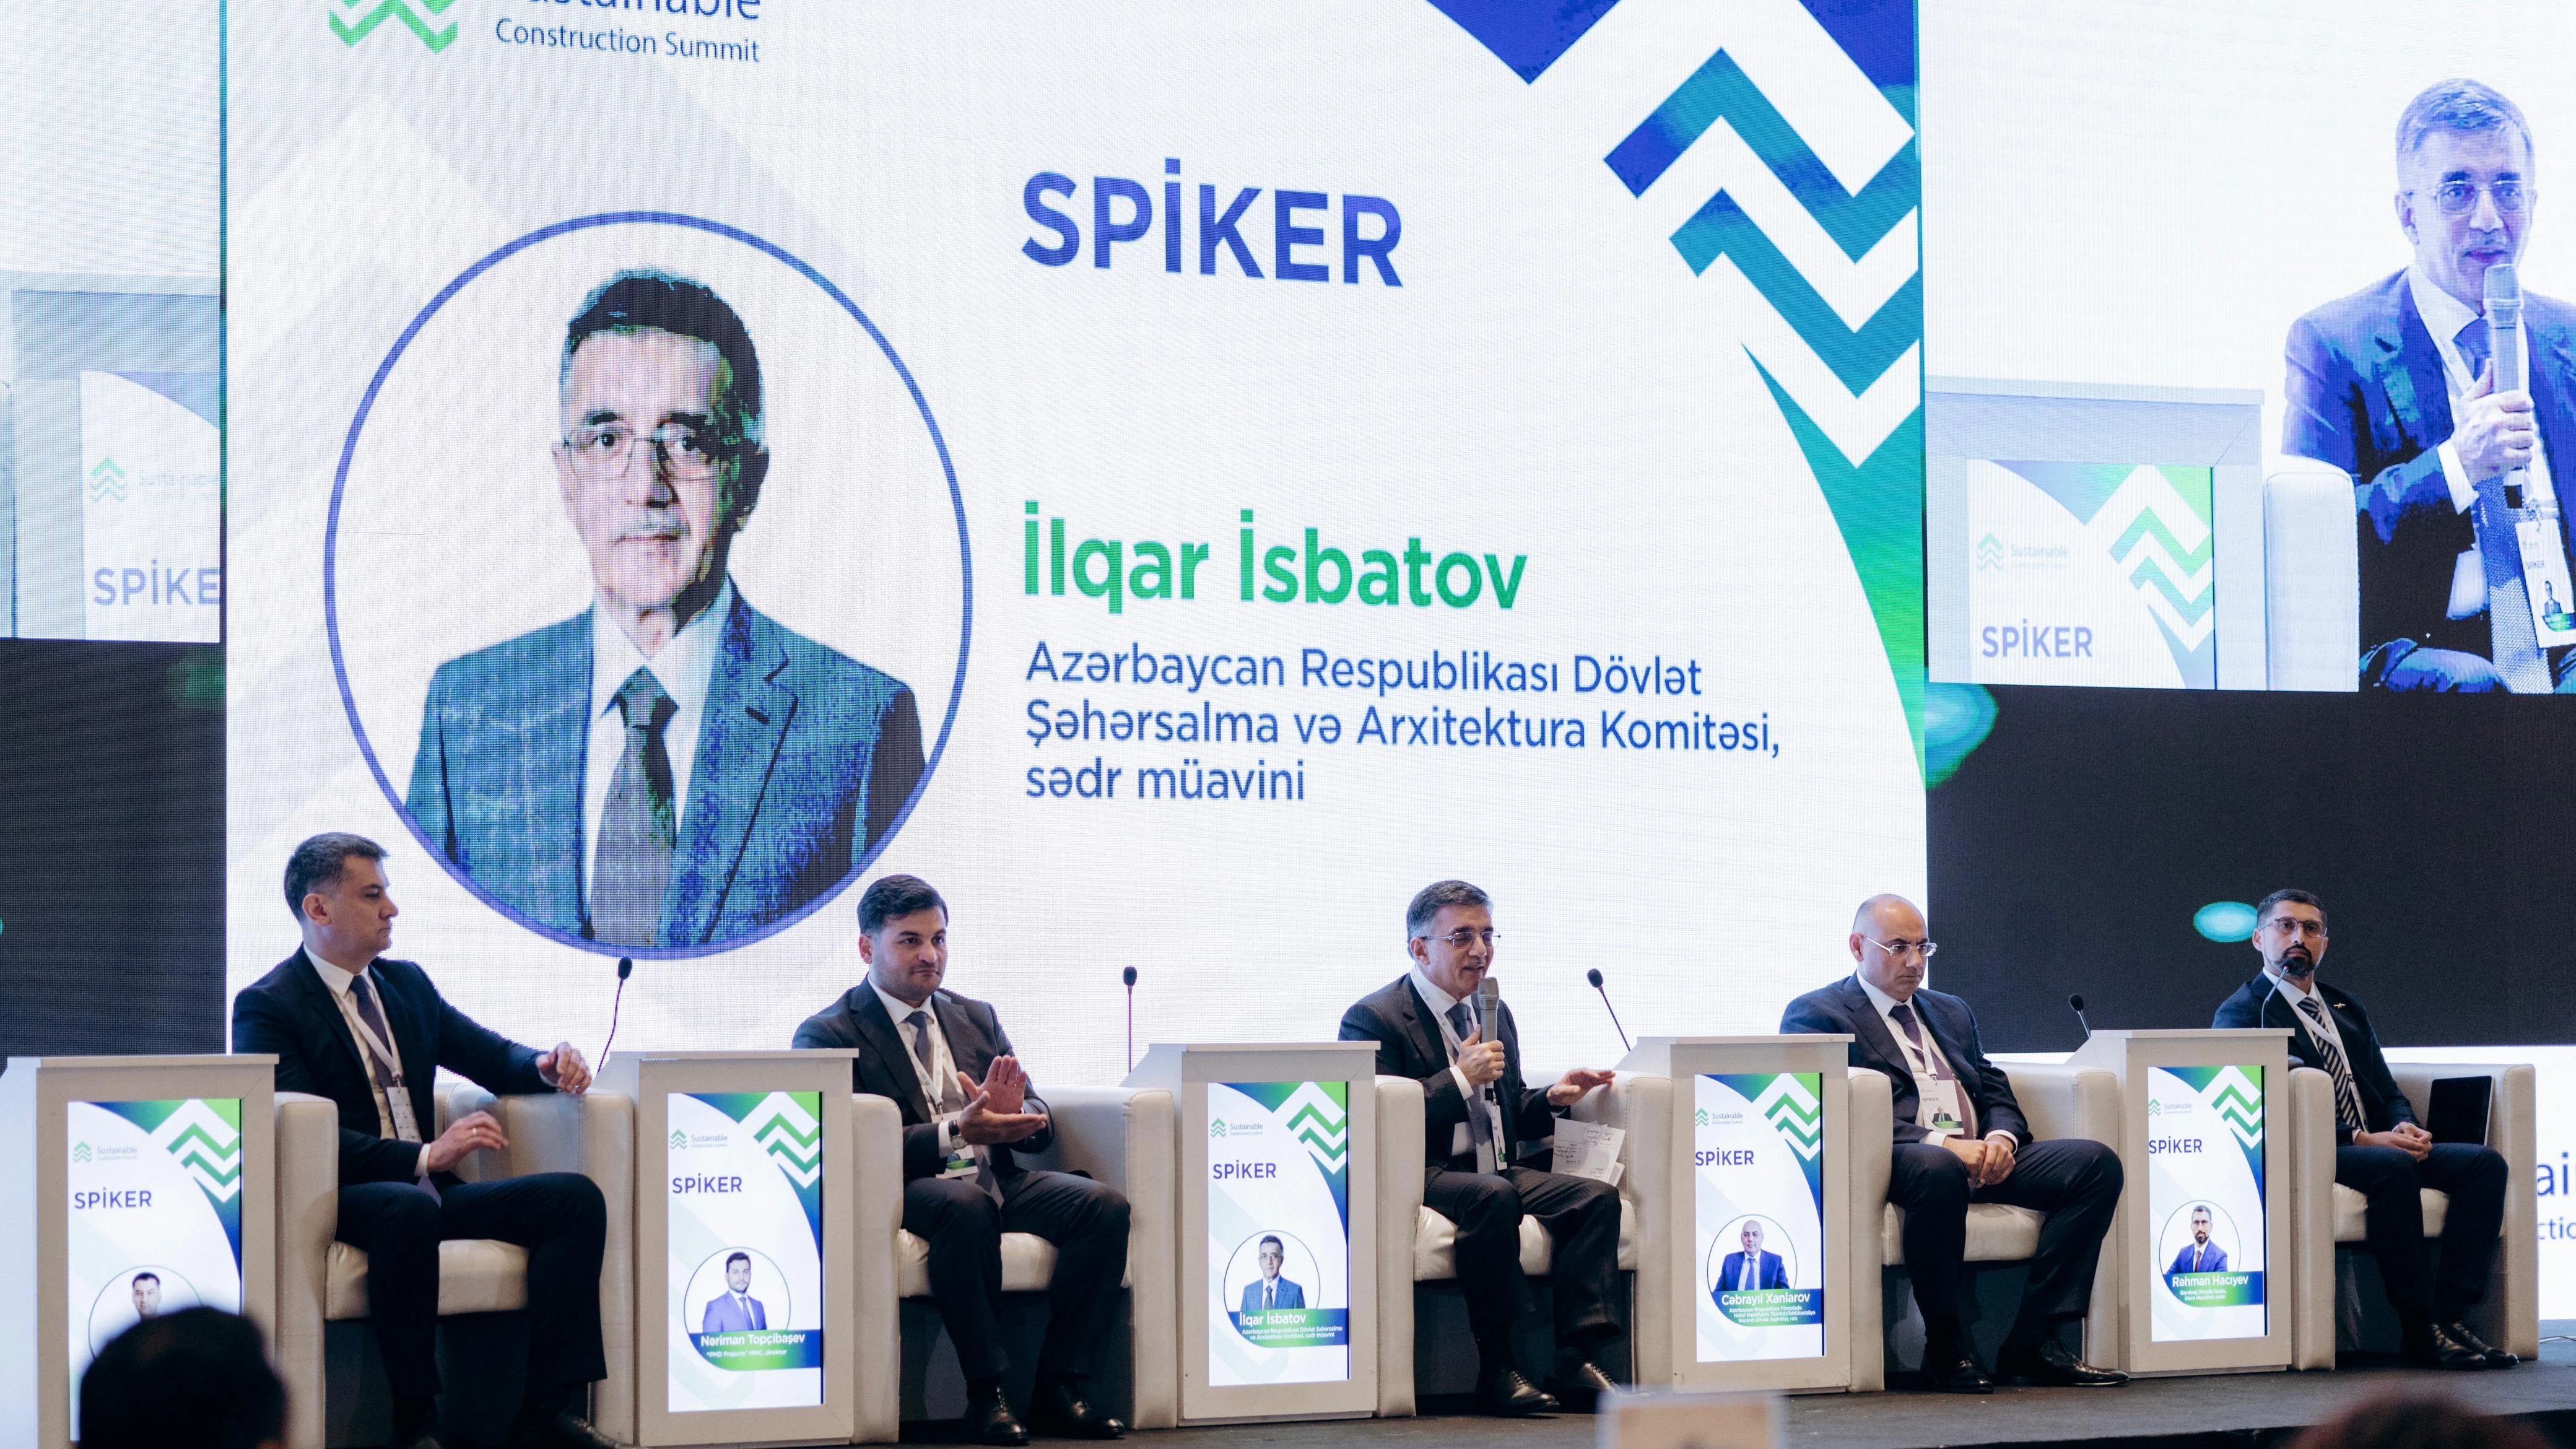 Заместитель председателя Государственного комитета по градостроительству и архитектуре Ильгар Исбатов выступил на панельных дискуссиях "Саммита устойчивого строительства"